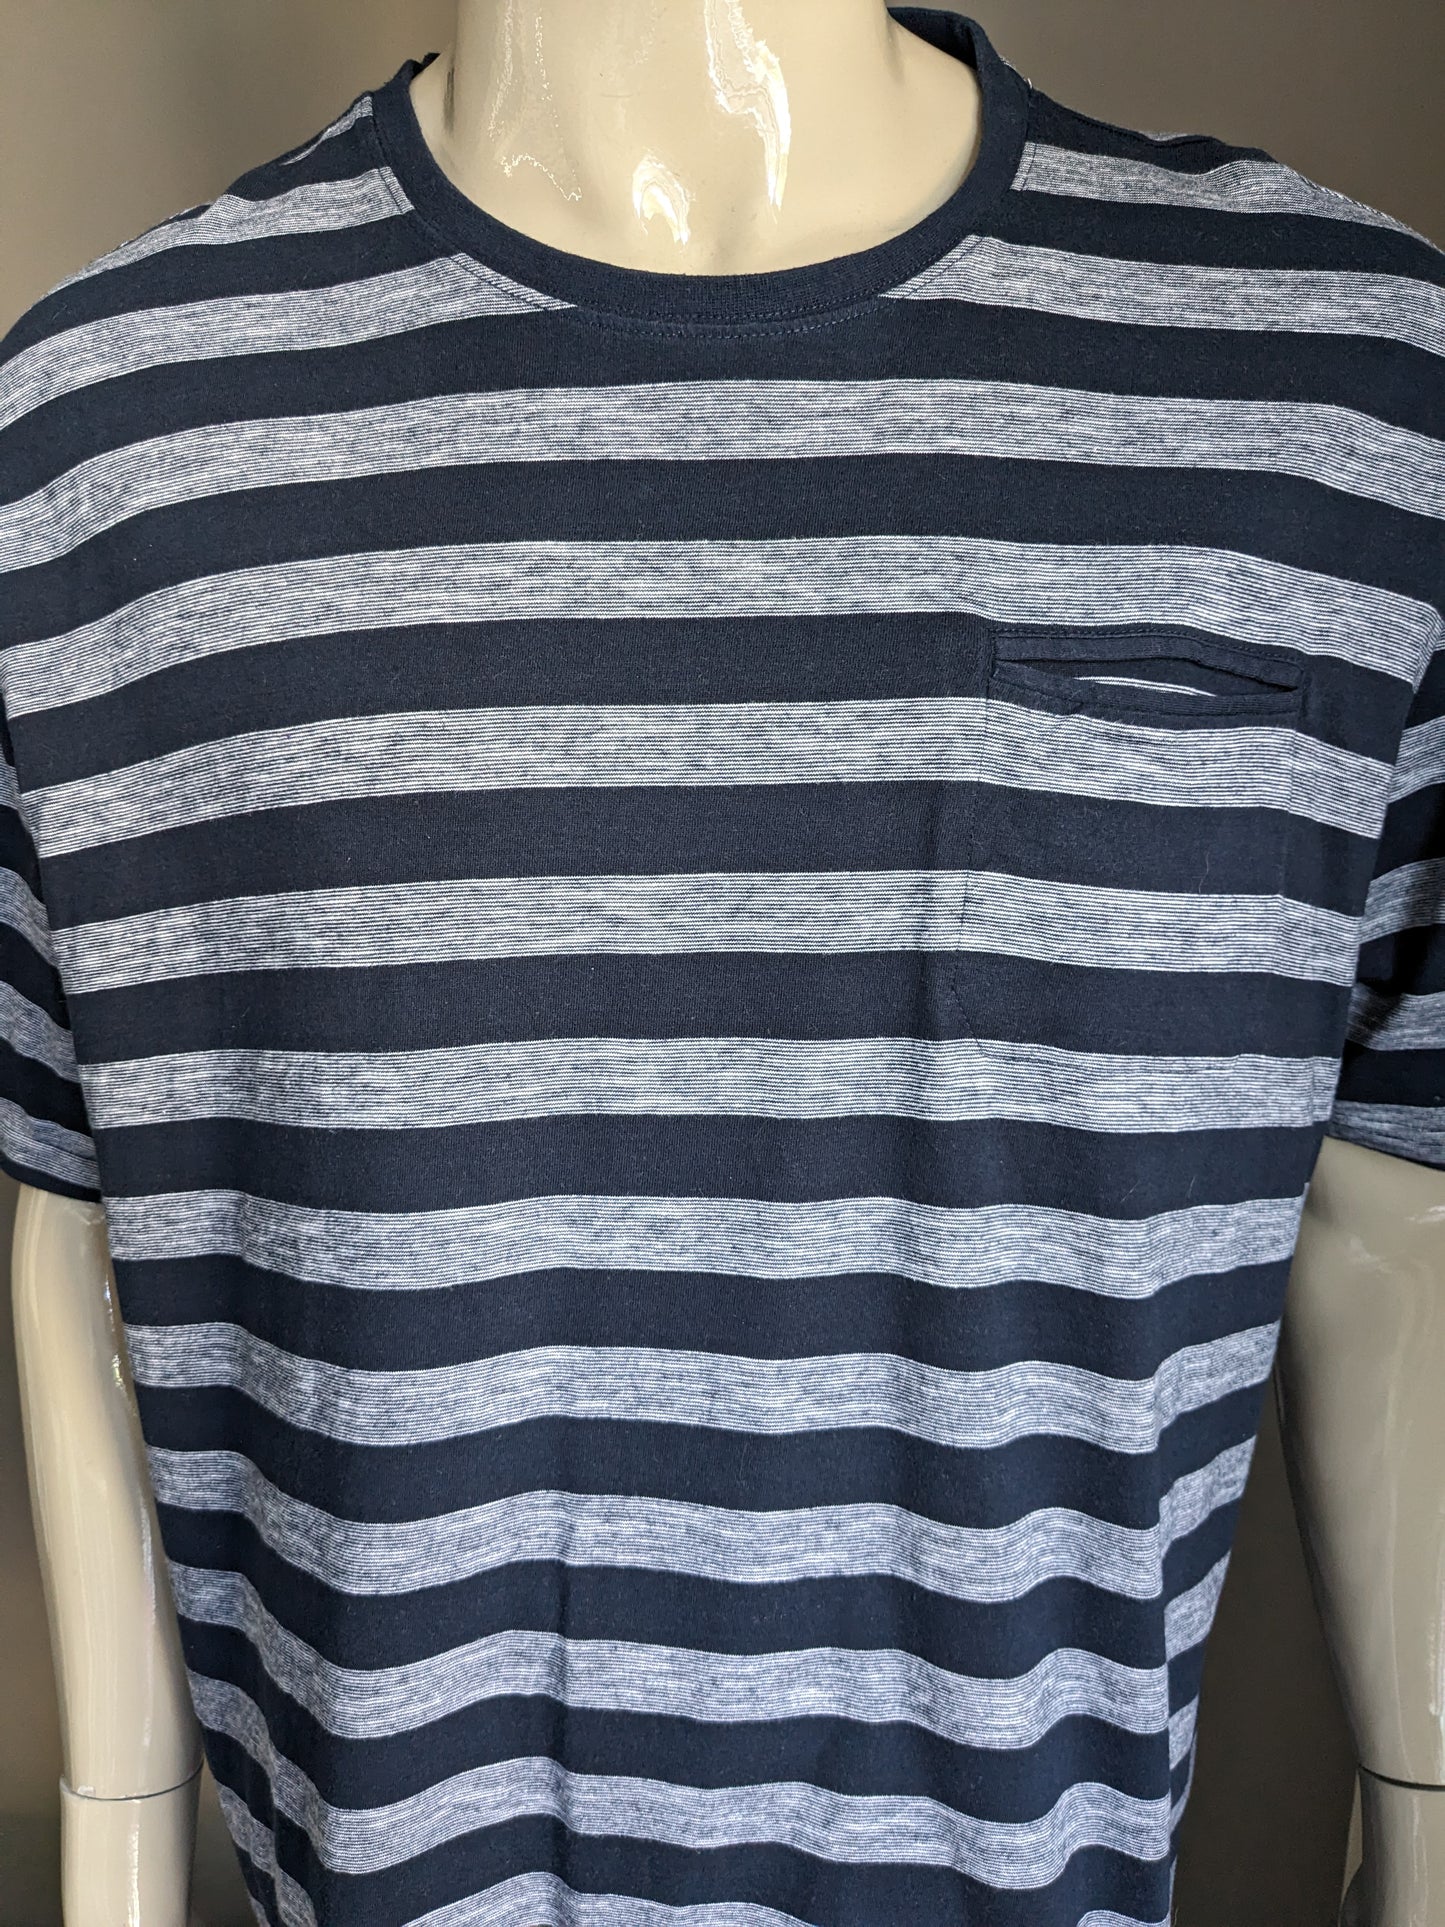 Westbury shirt. Blue gray striped. Size 3XL / XXXL.